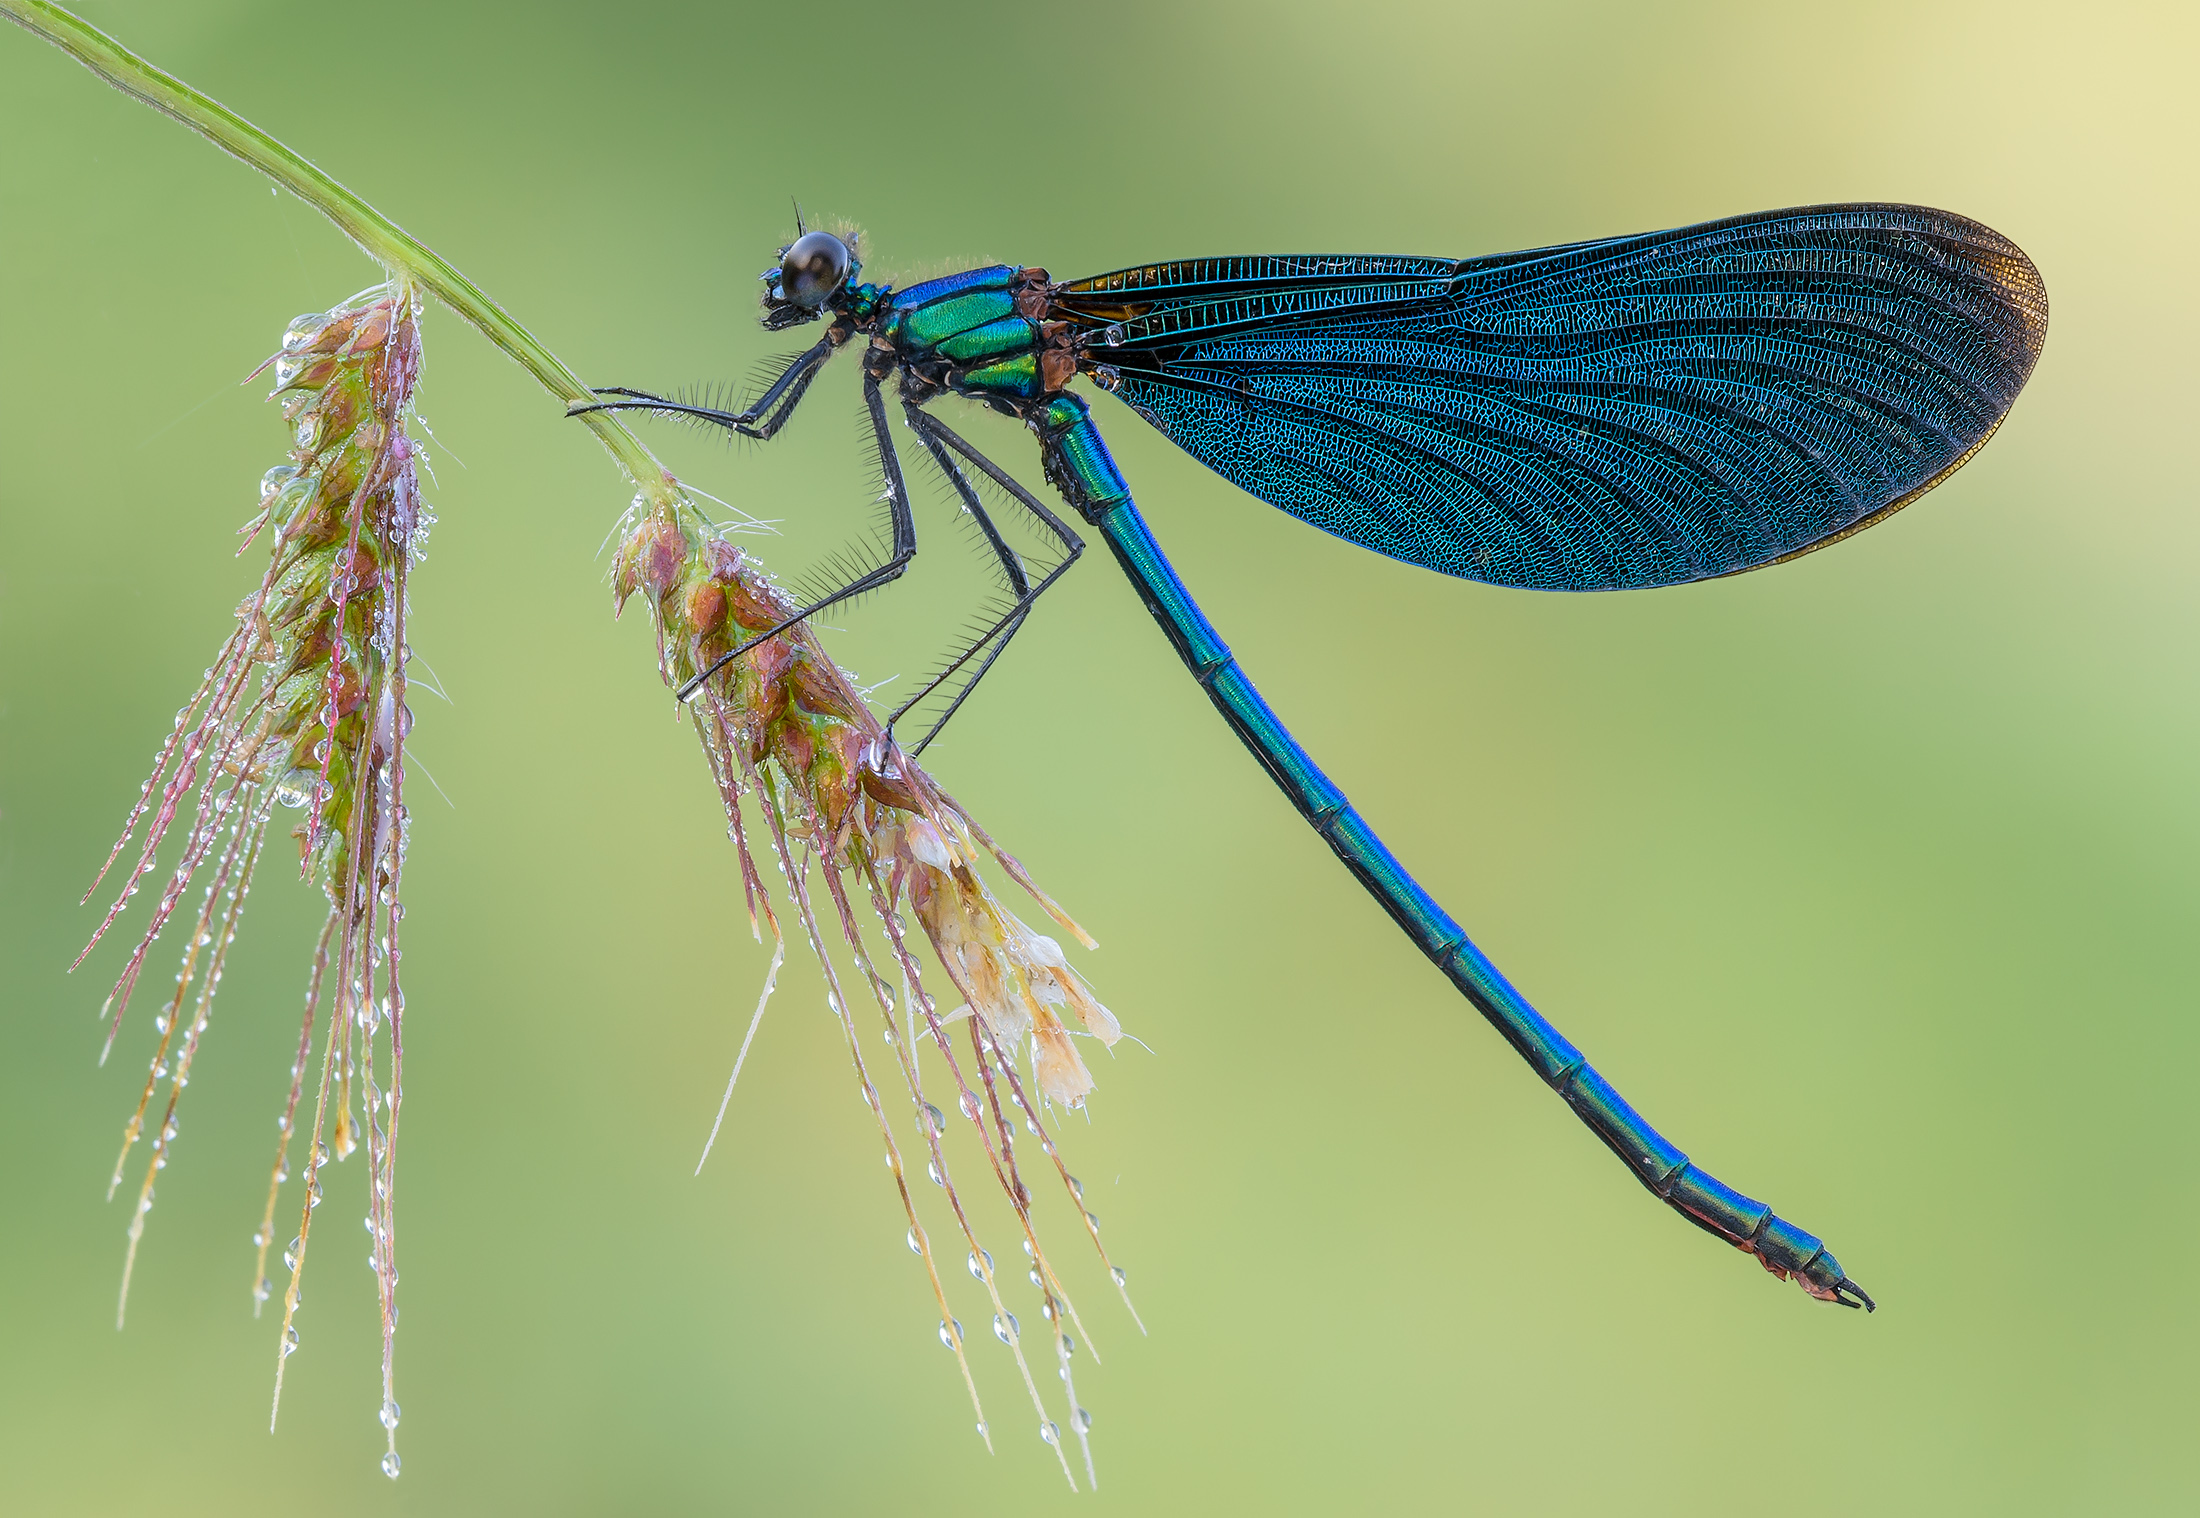 Личинка стрекозы: название, внешний вид и места обитания